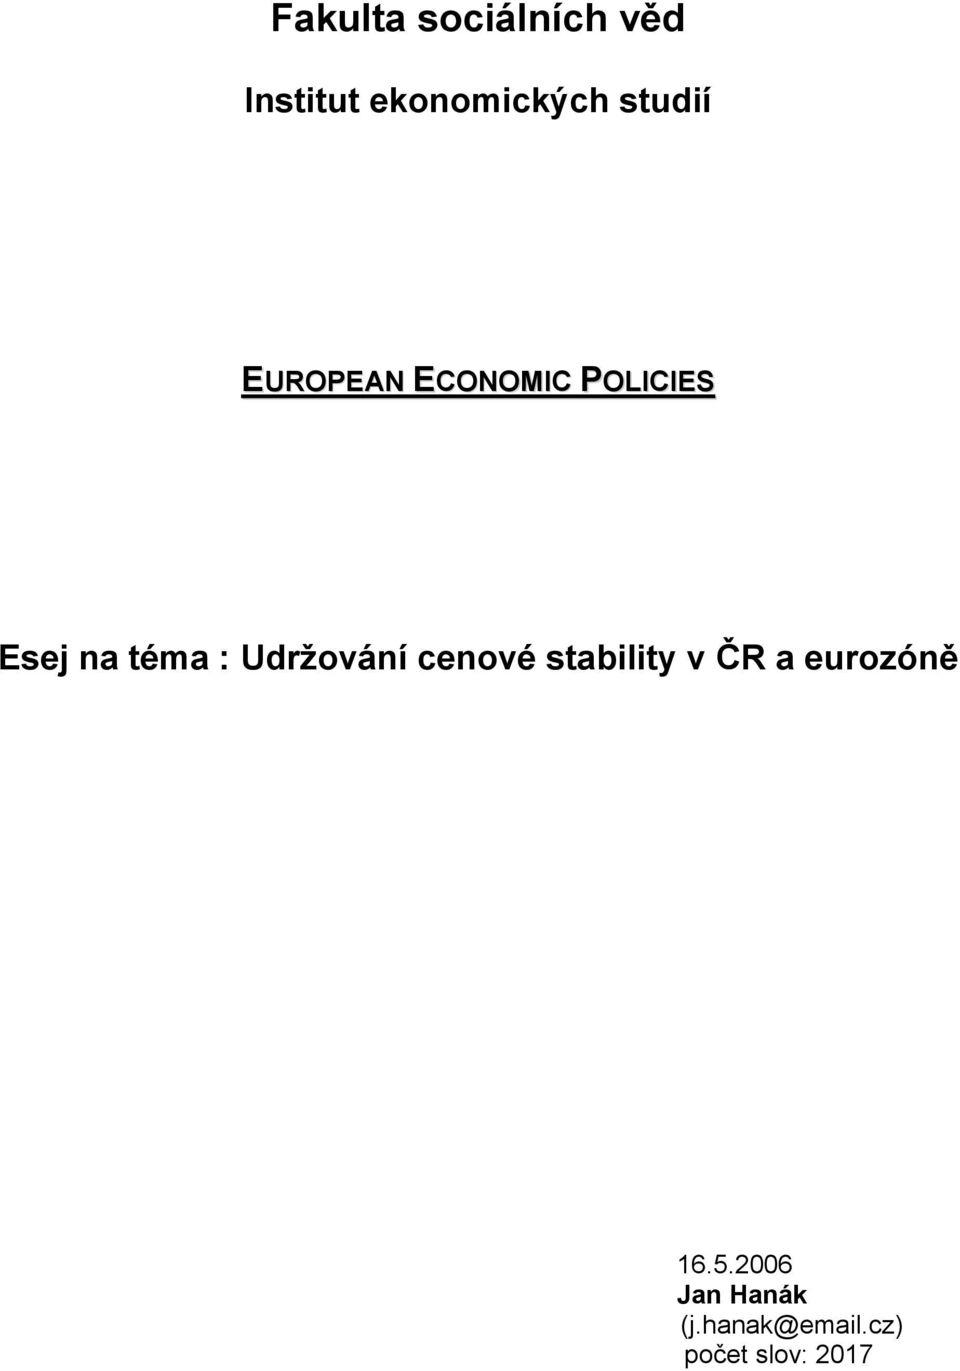 téma : Udržování cenové stability v ČR a